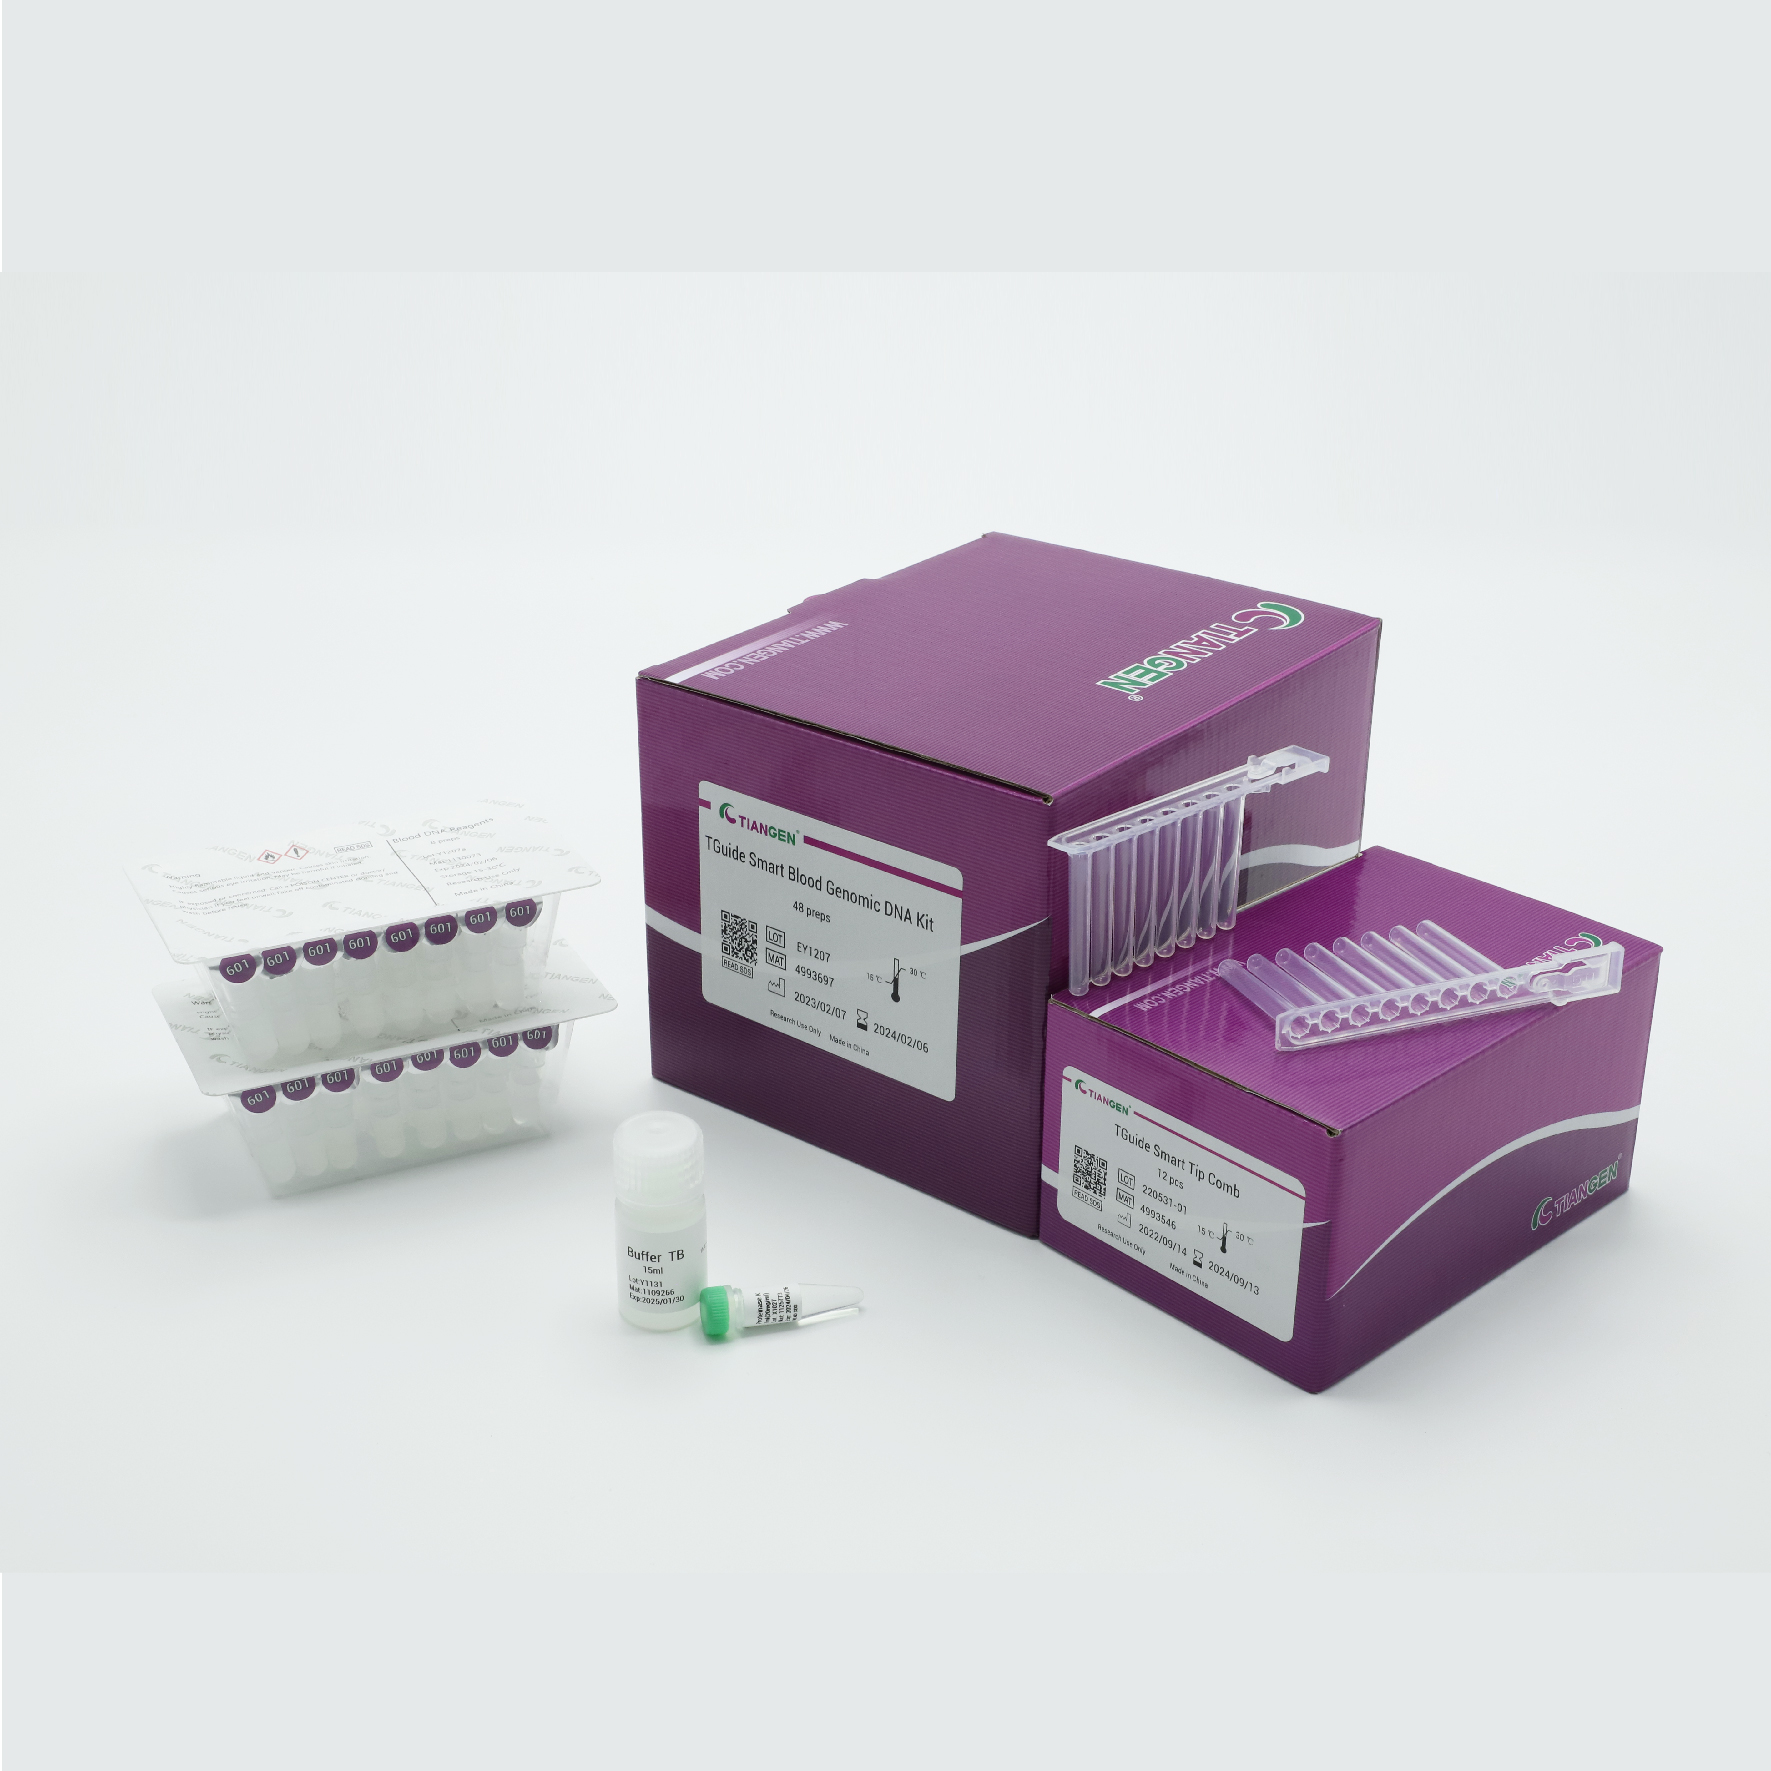 TGuide Smart Blood Genomic DNA Kit